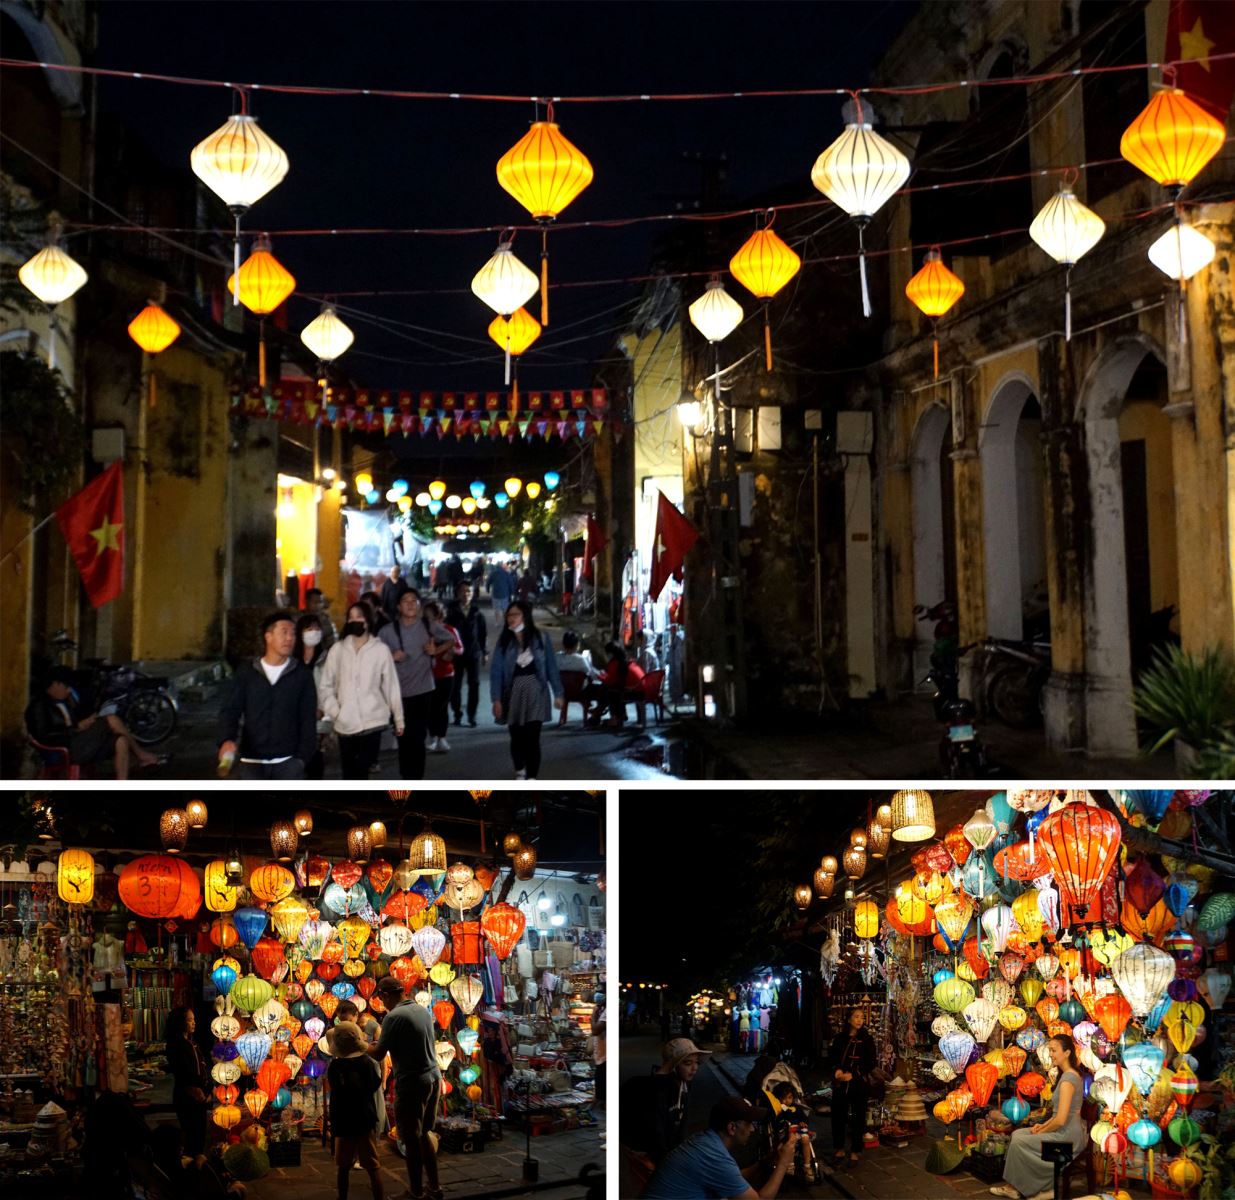 Đèn lồng được treo và bày bán trên các tuyến phố cổ ở thành phố Hội An.